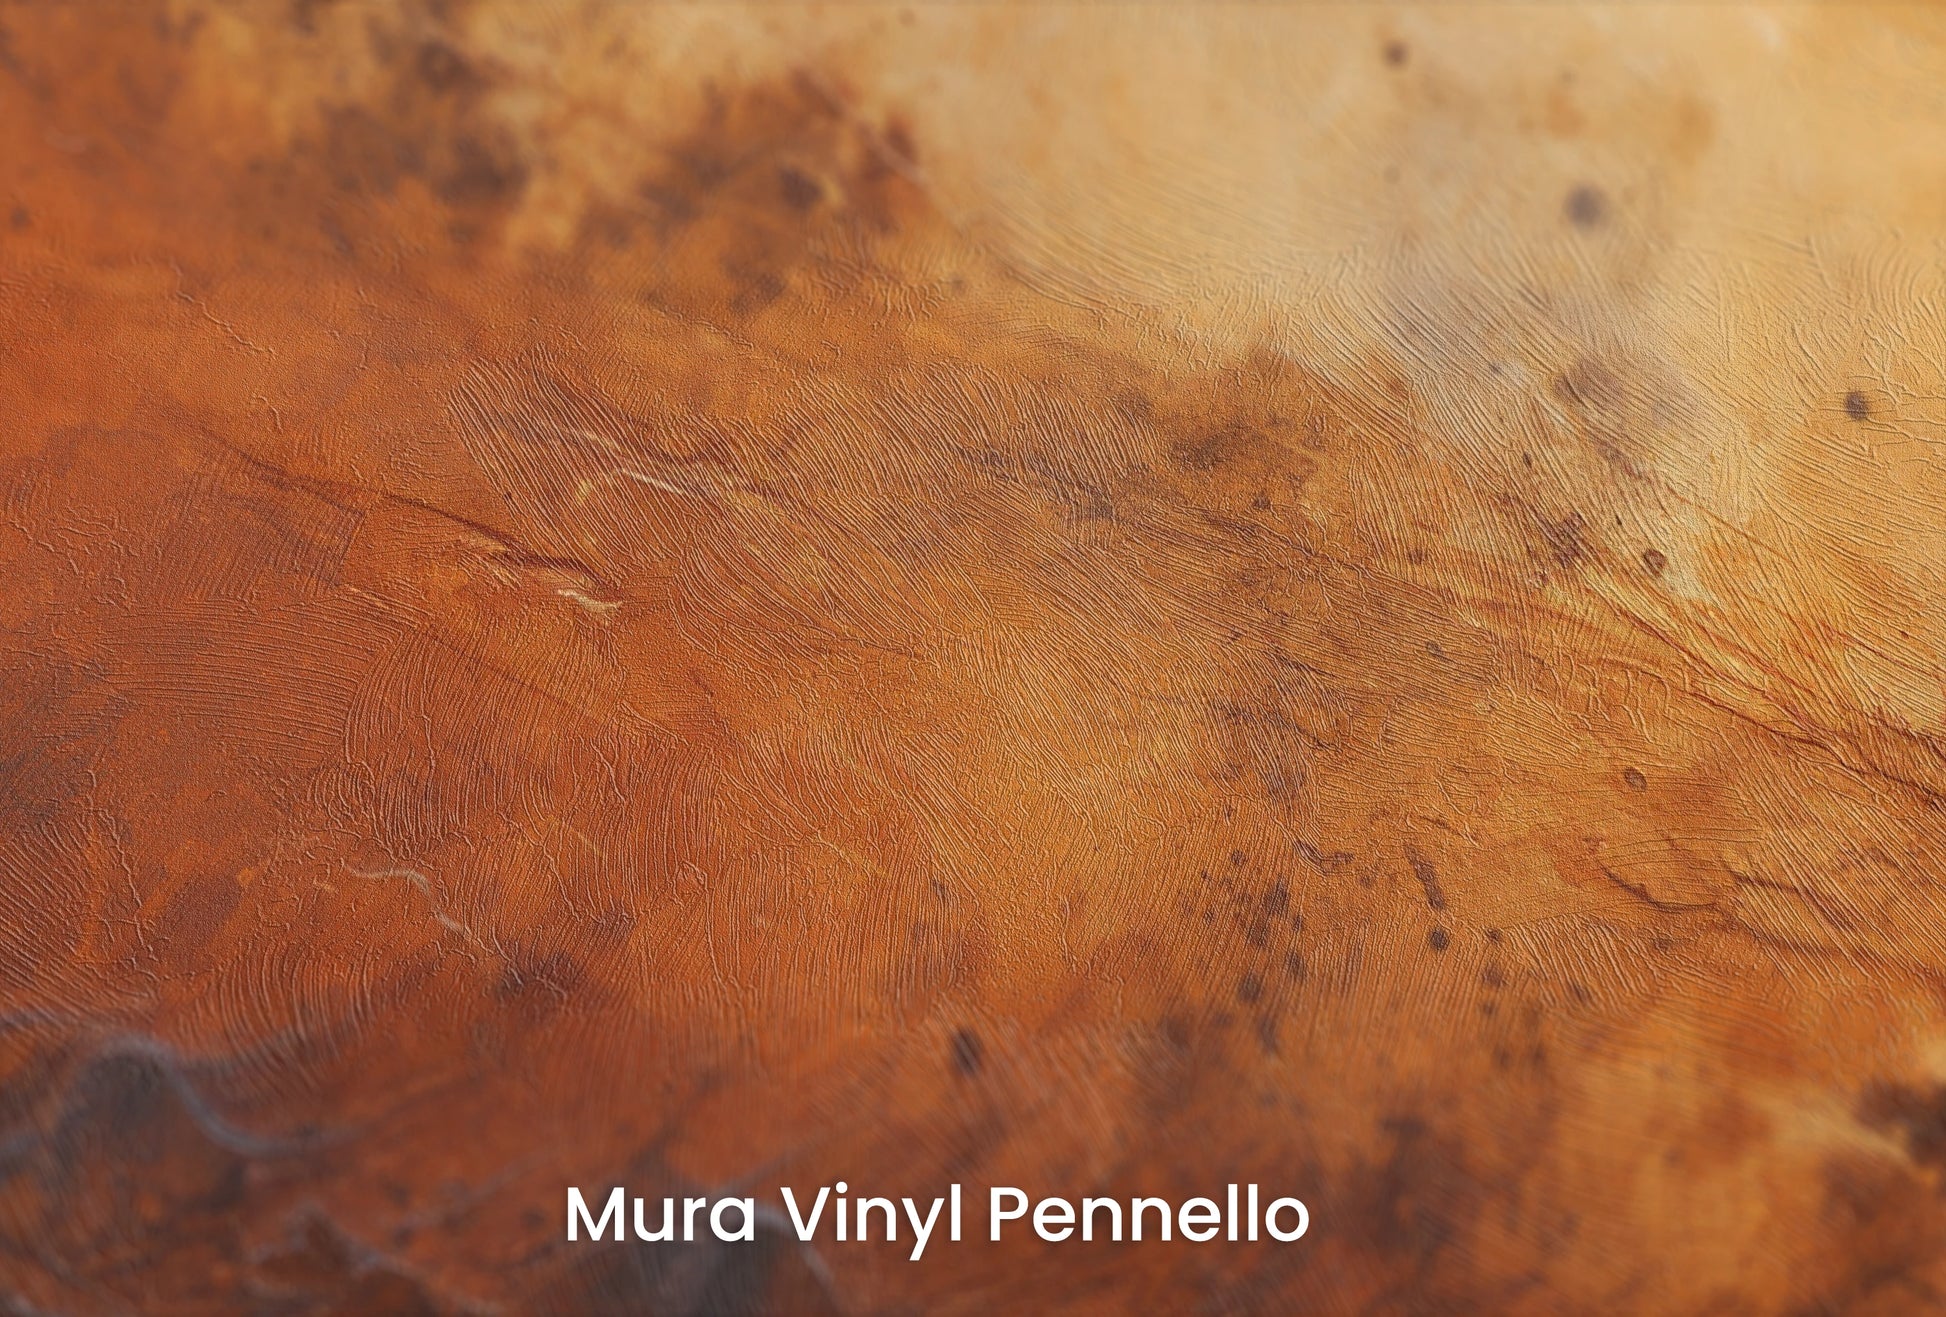 Zbliżenie na artystyczną fototapetę o nazwie Martian Winds na podłożu Mura Vinyl Pennello - faktura pociągnięć pędzla malarskiego.